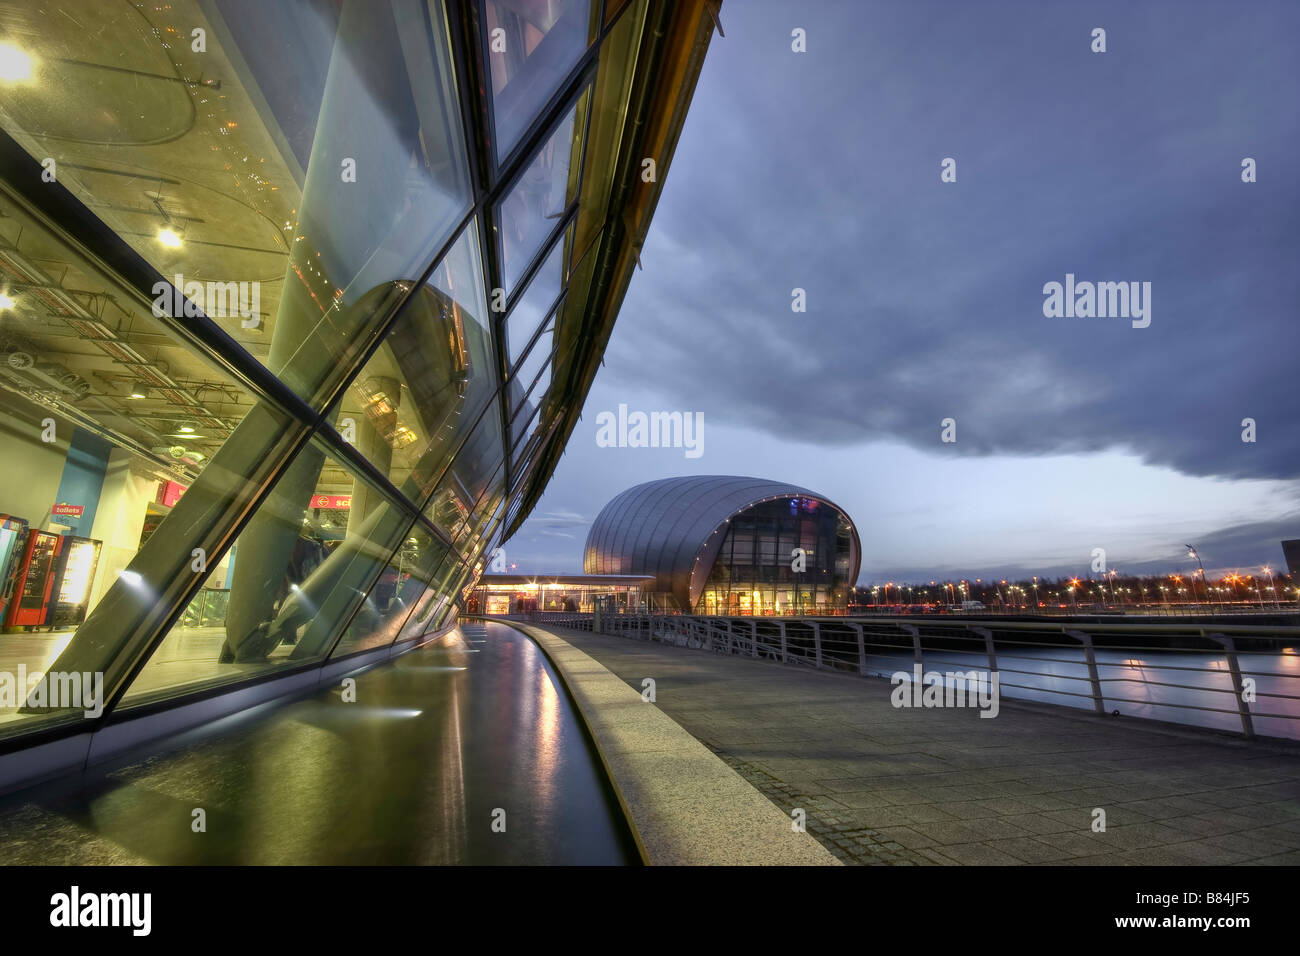 Le Glasgow Science Centre sur Pacific Quay avec le cinéma Imax derrière Banque D'Images